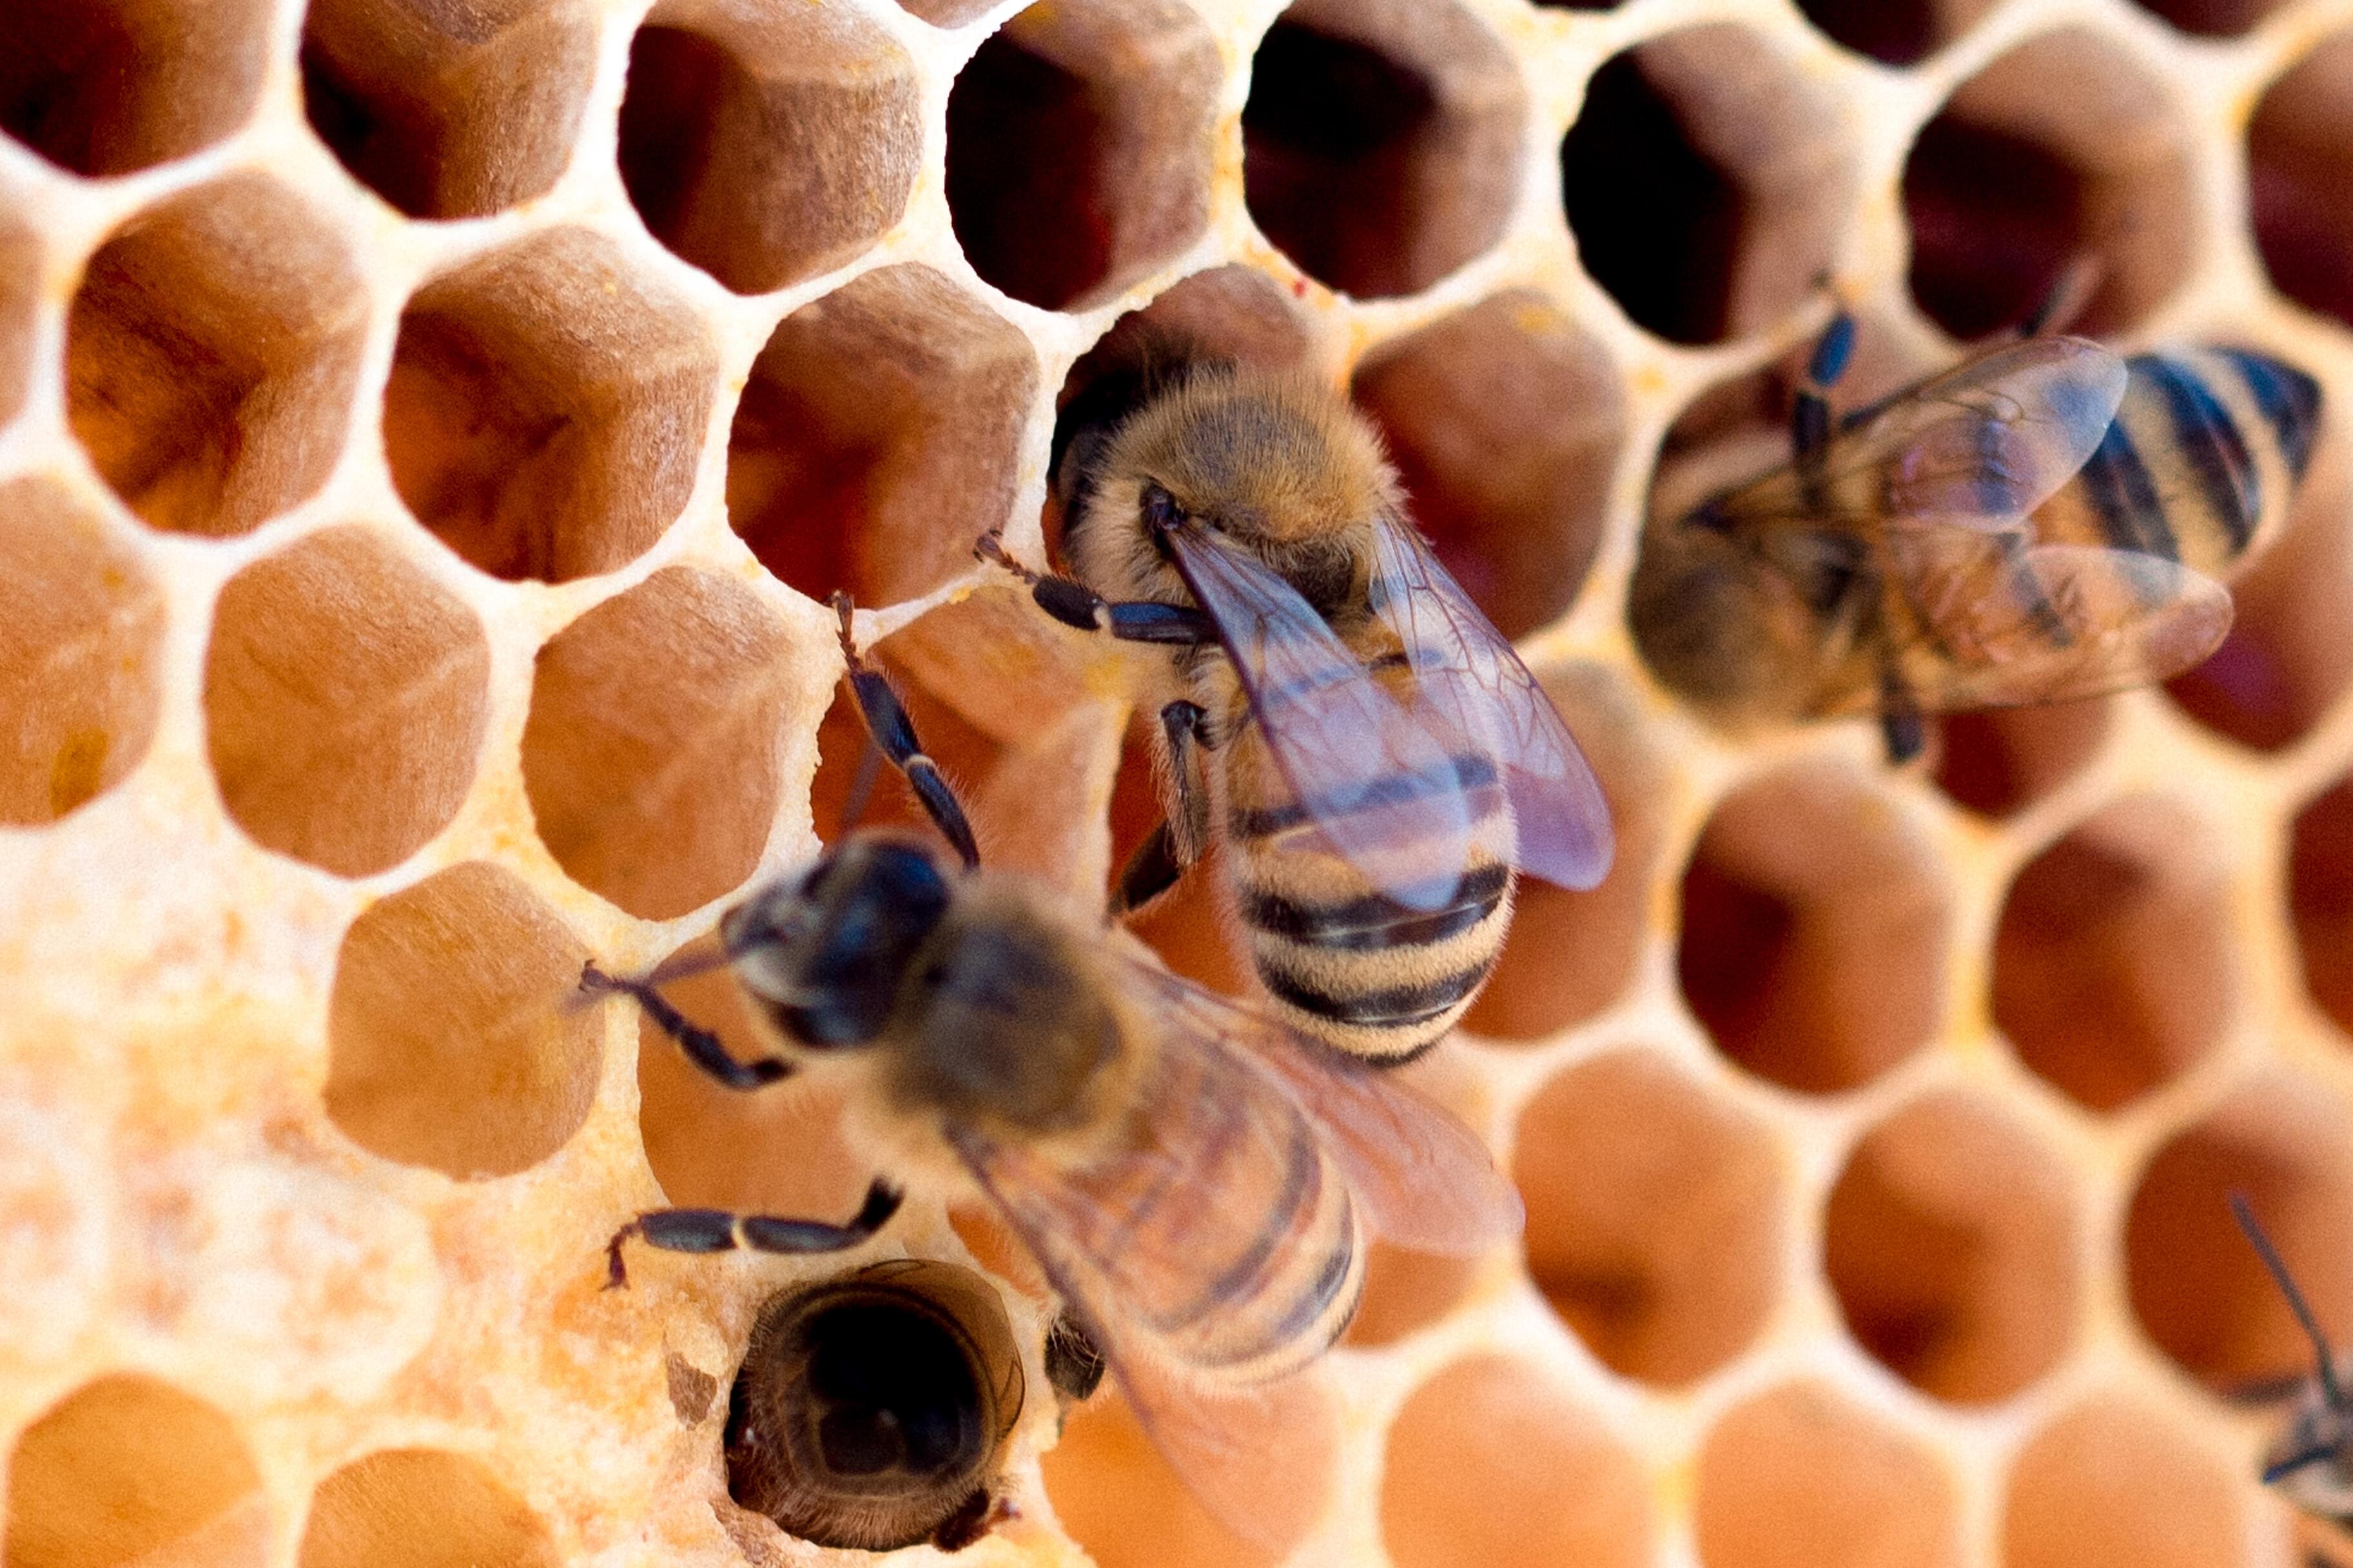 Срок жизни пчёл уменьшился в два раза за последние 50 лет. Что происходит